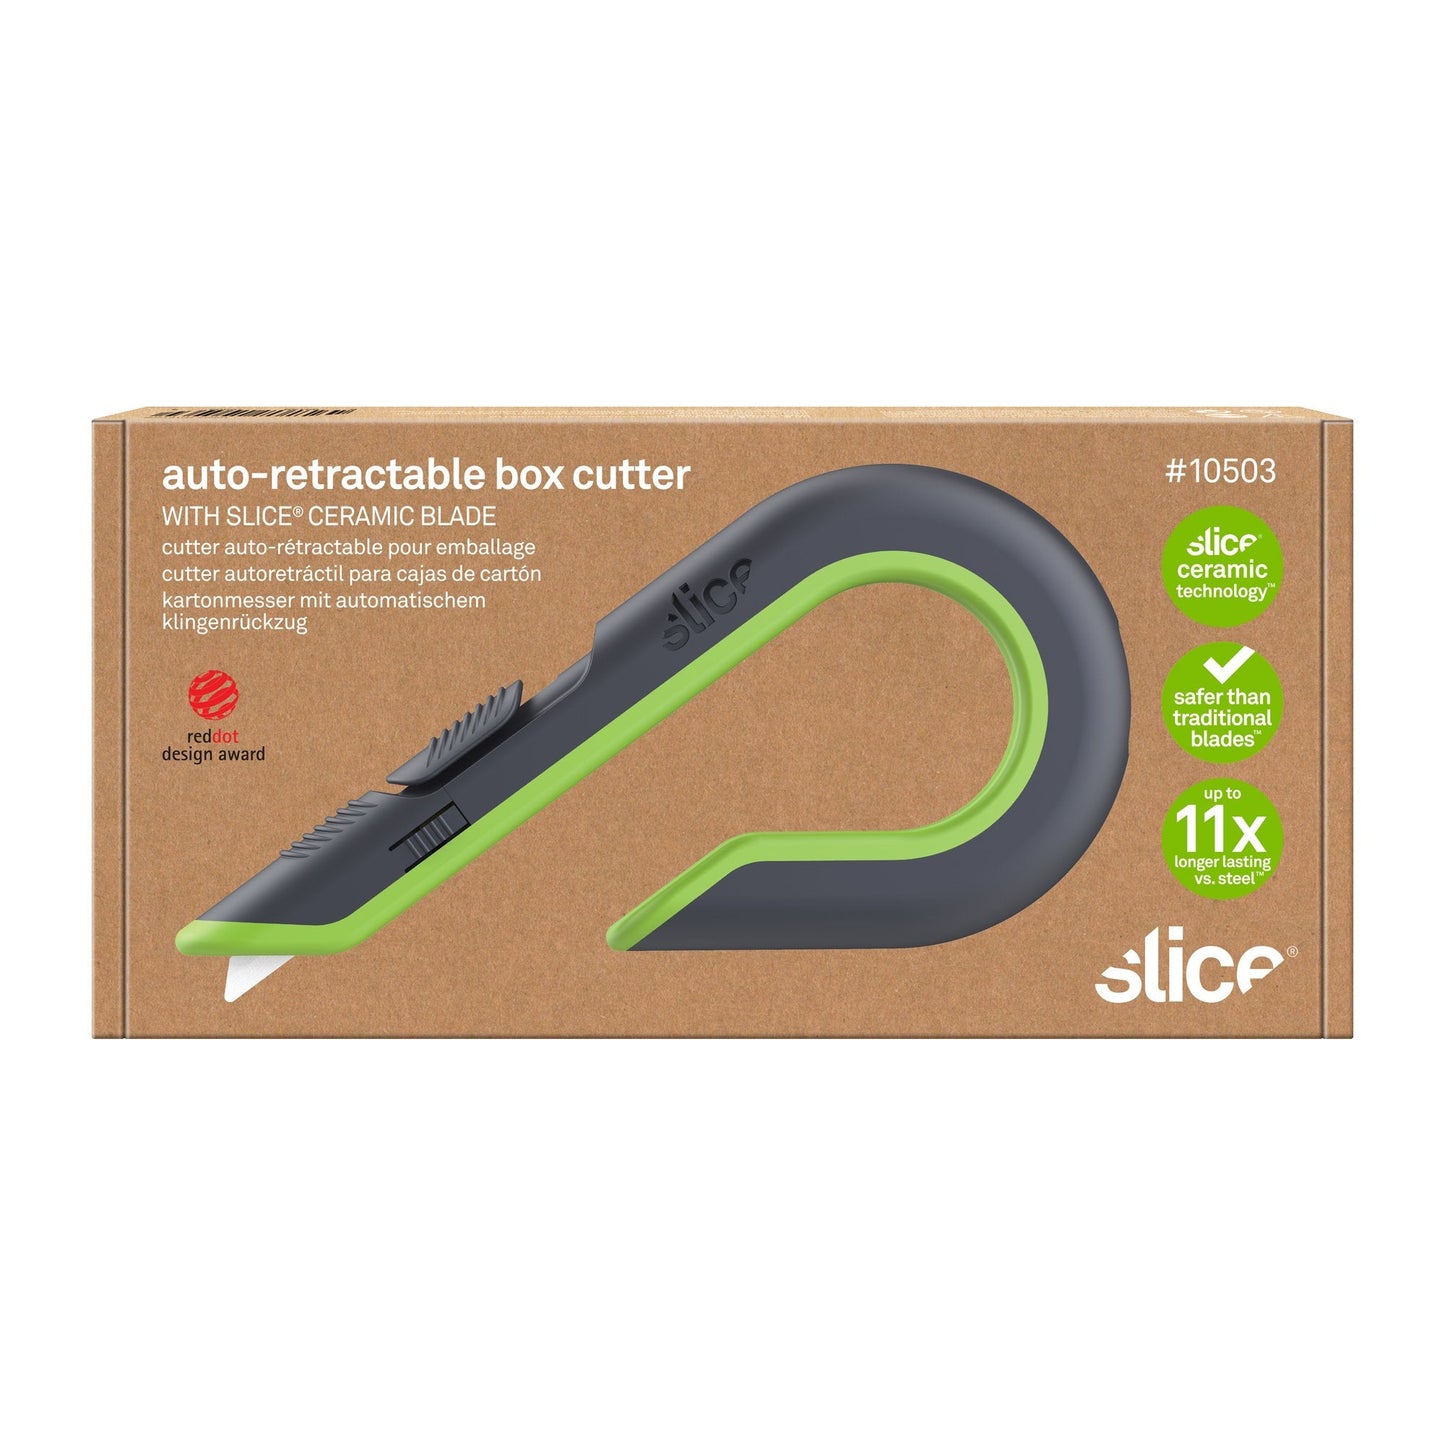 Auto-Retractable Box Cutter